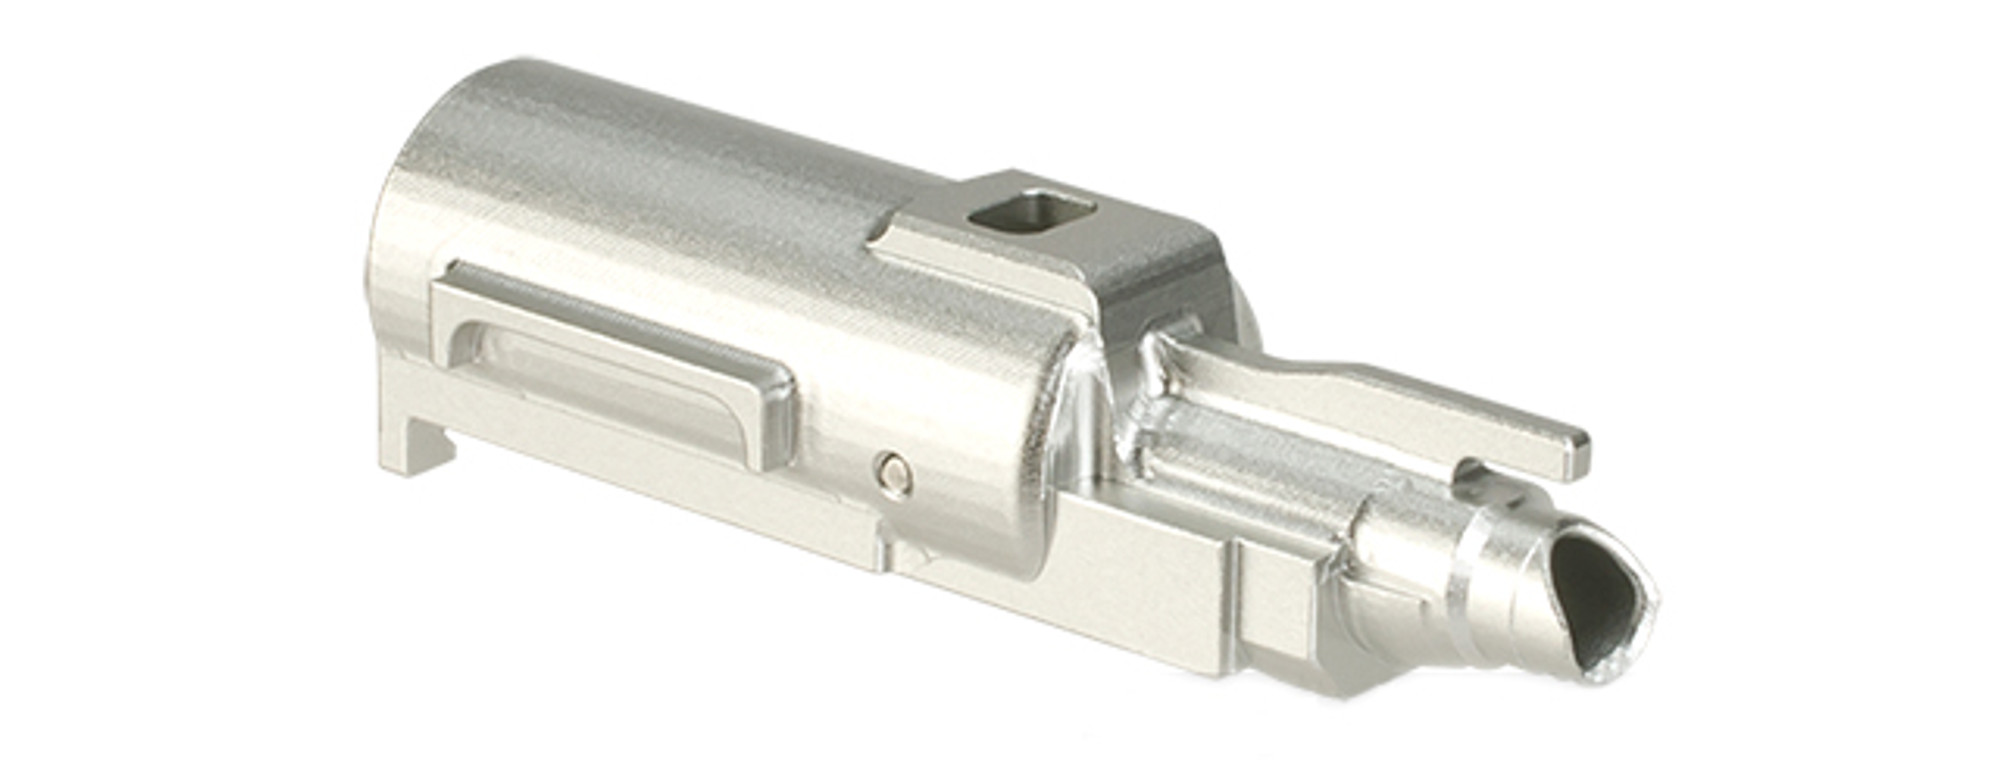 UAC Aluminum Loading Nozzle for TM M&P 9 Series Airsoft GBB Pistols